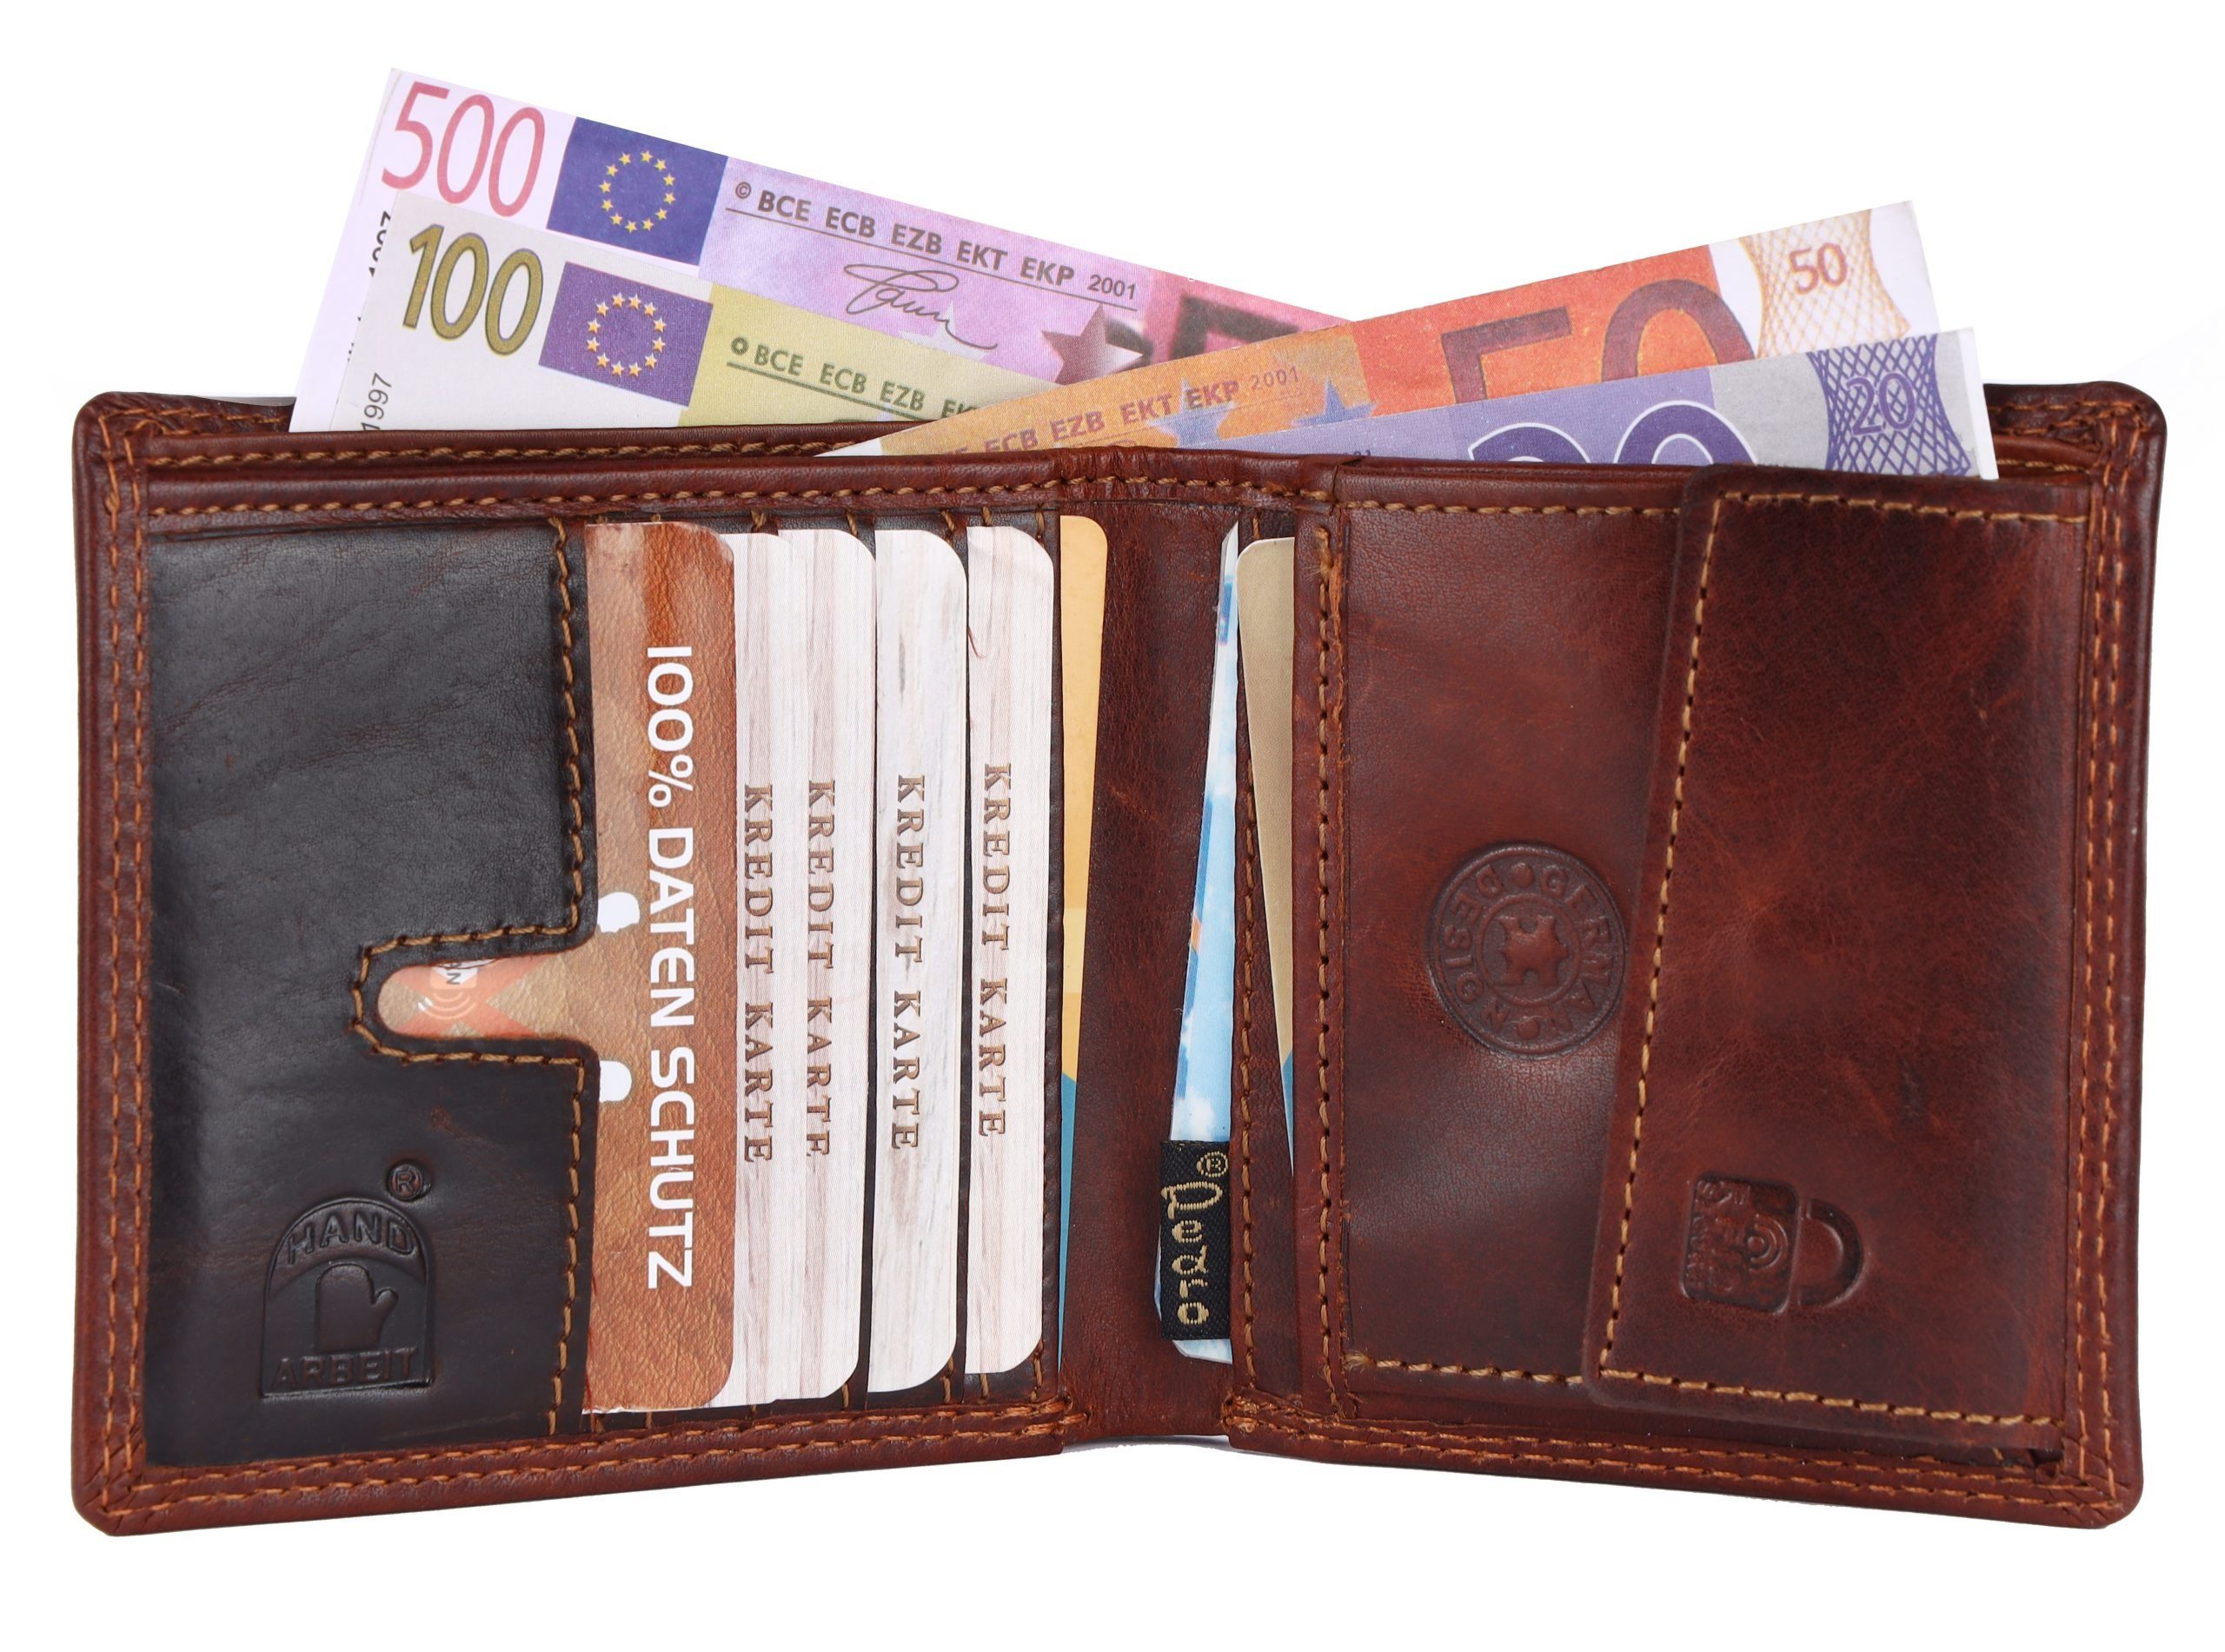 SHG Geldbörse RFID Männerbörse, Leder Schutz Brieftasche Druckknopfverschluss, Portemonnaie Geldbeutel Herren Börse Kreditkartenfächer, Münzfach